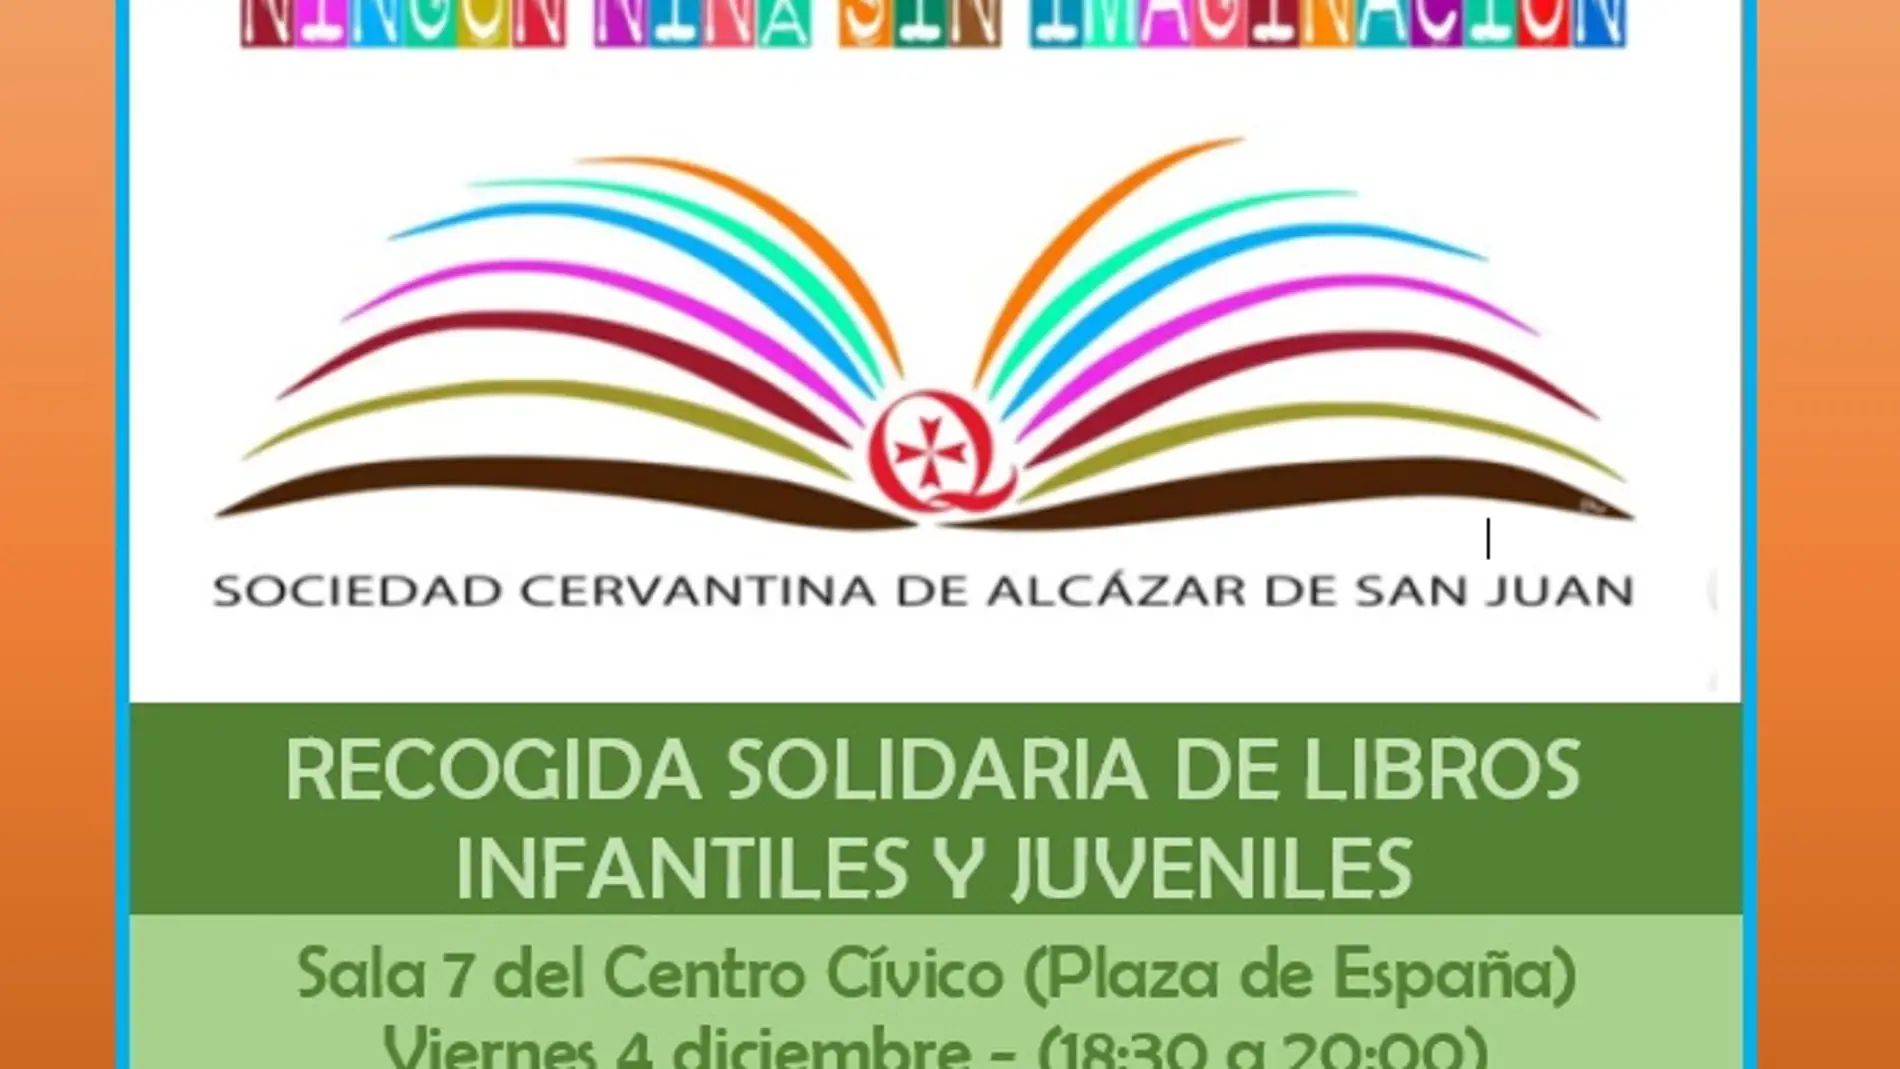 La Sociedad Cervantina apuesta porque todos los niños tengan acceso a la literatura